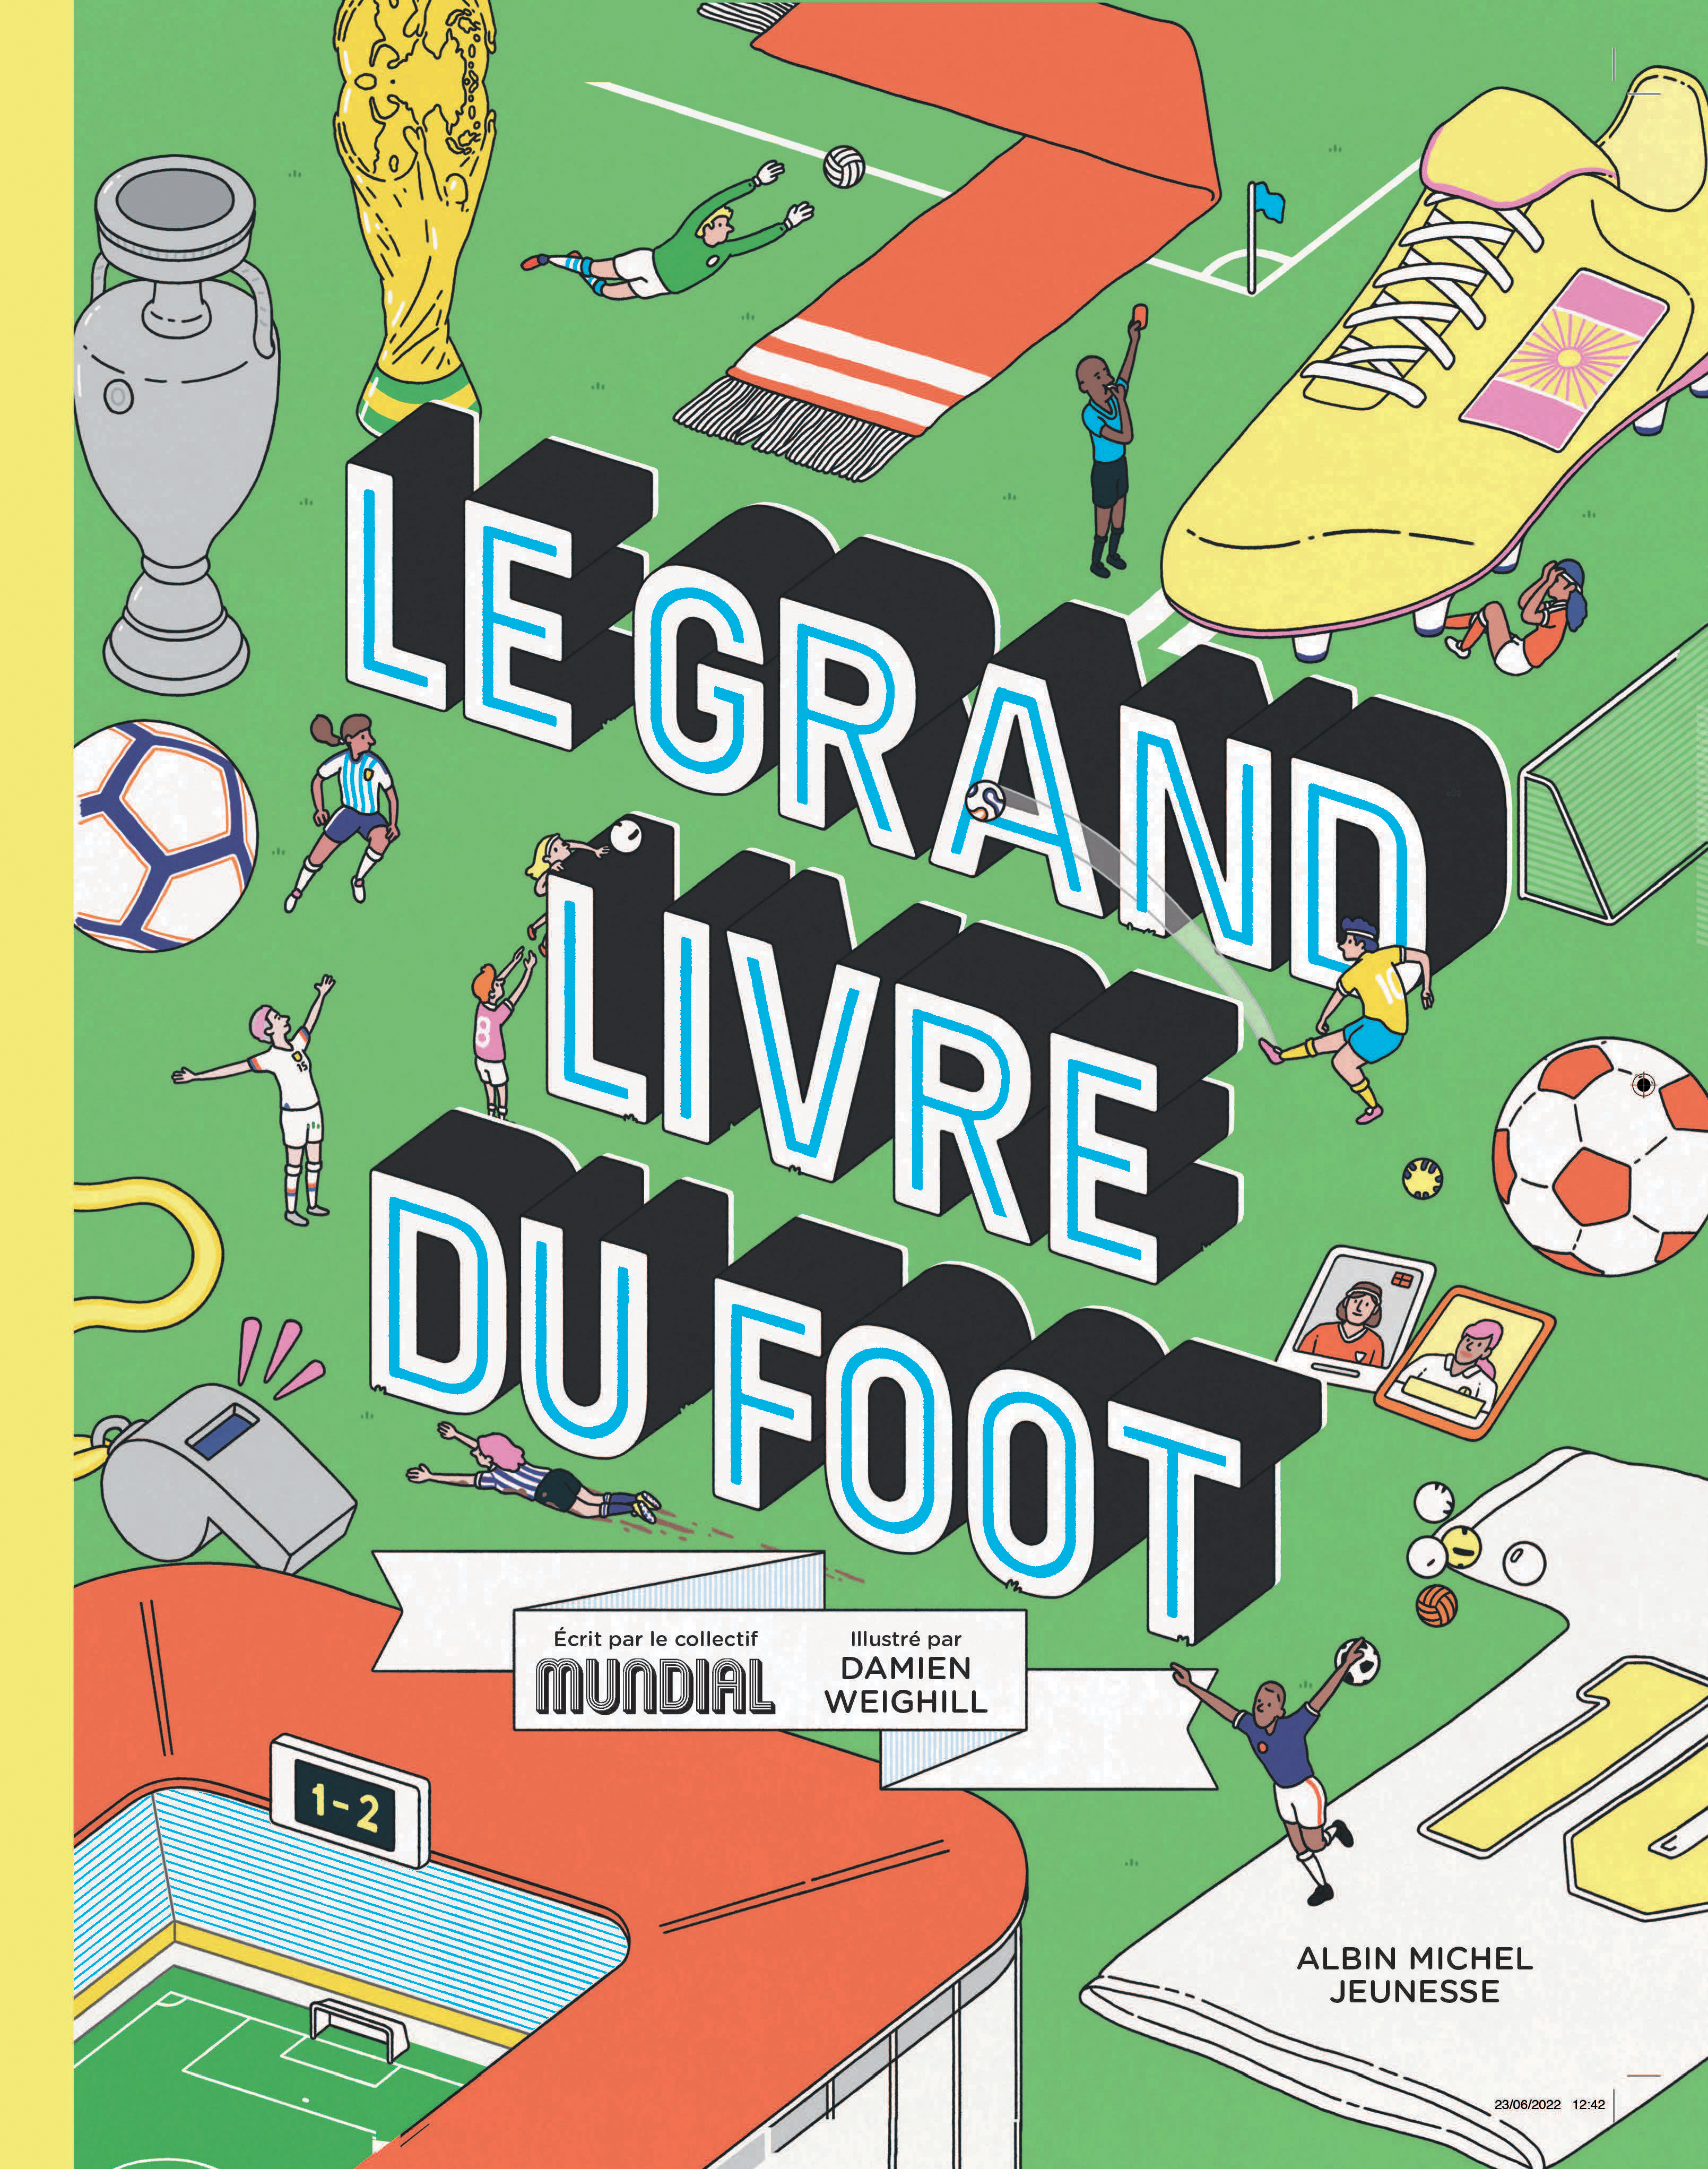 Le Grand Livre du foot | Éditions Albin Michel